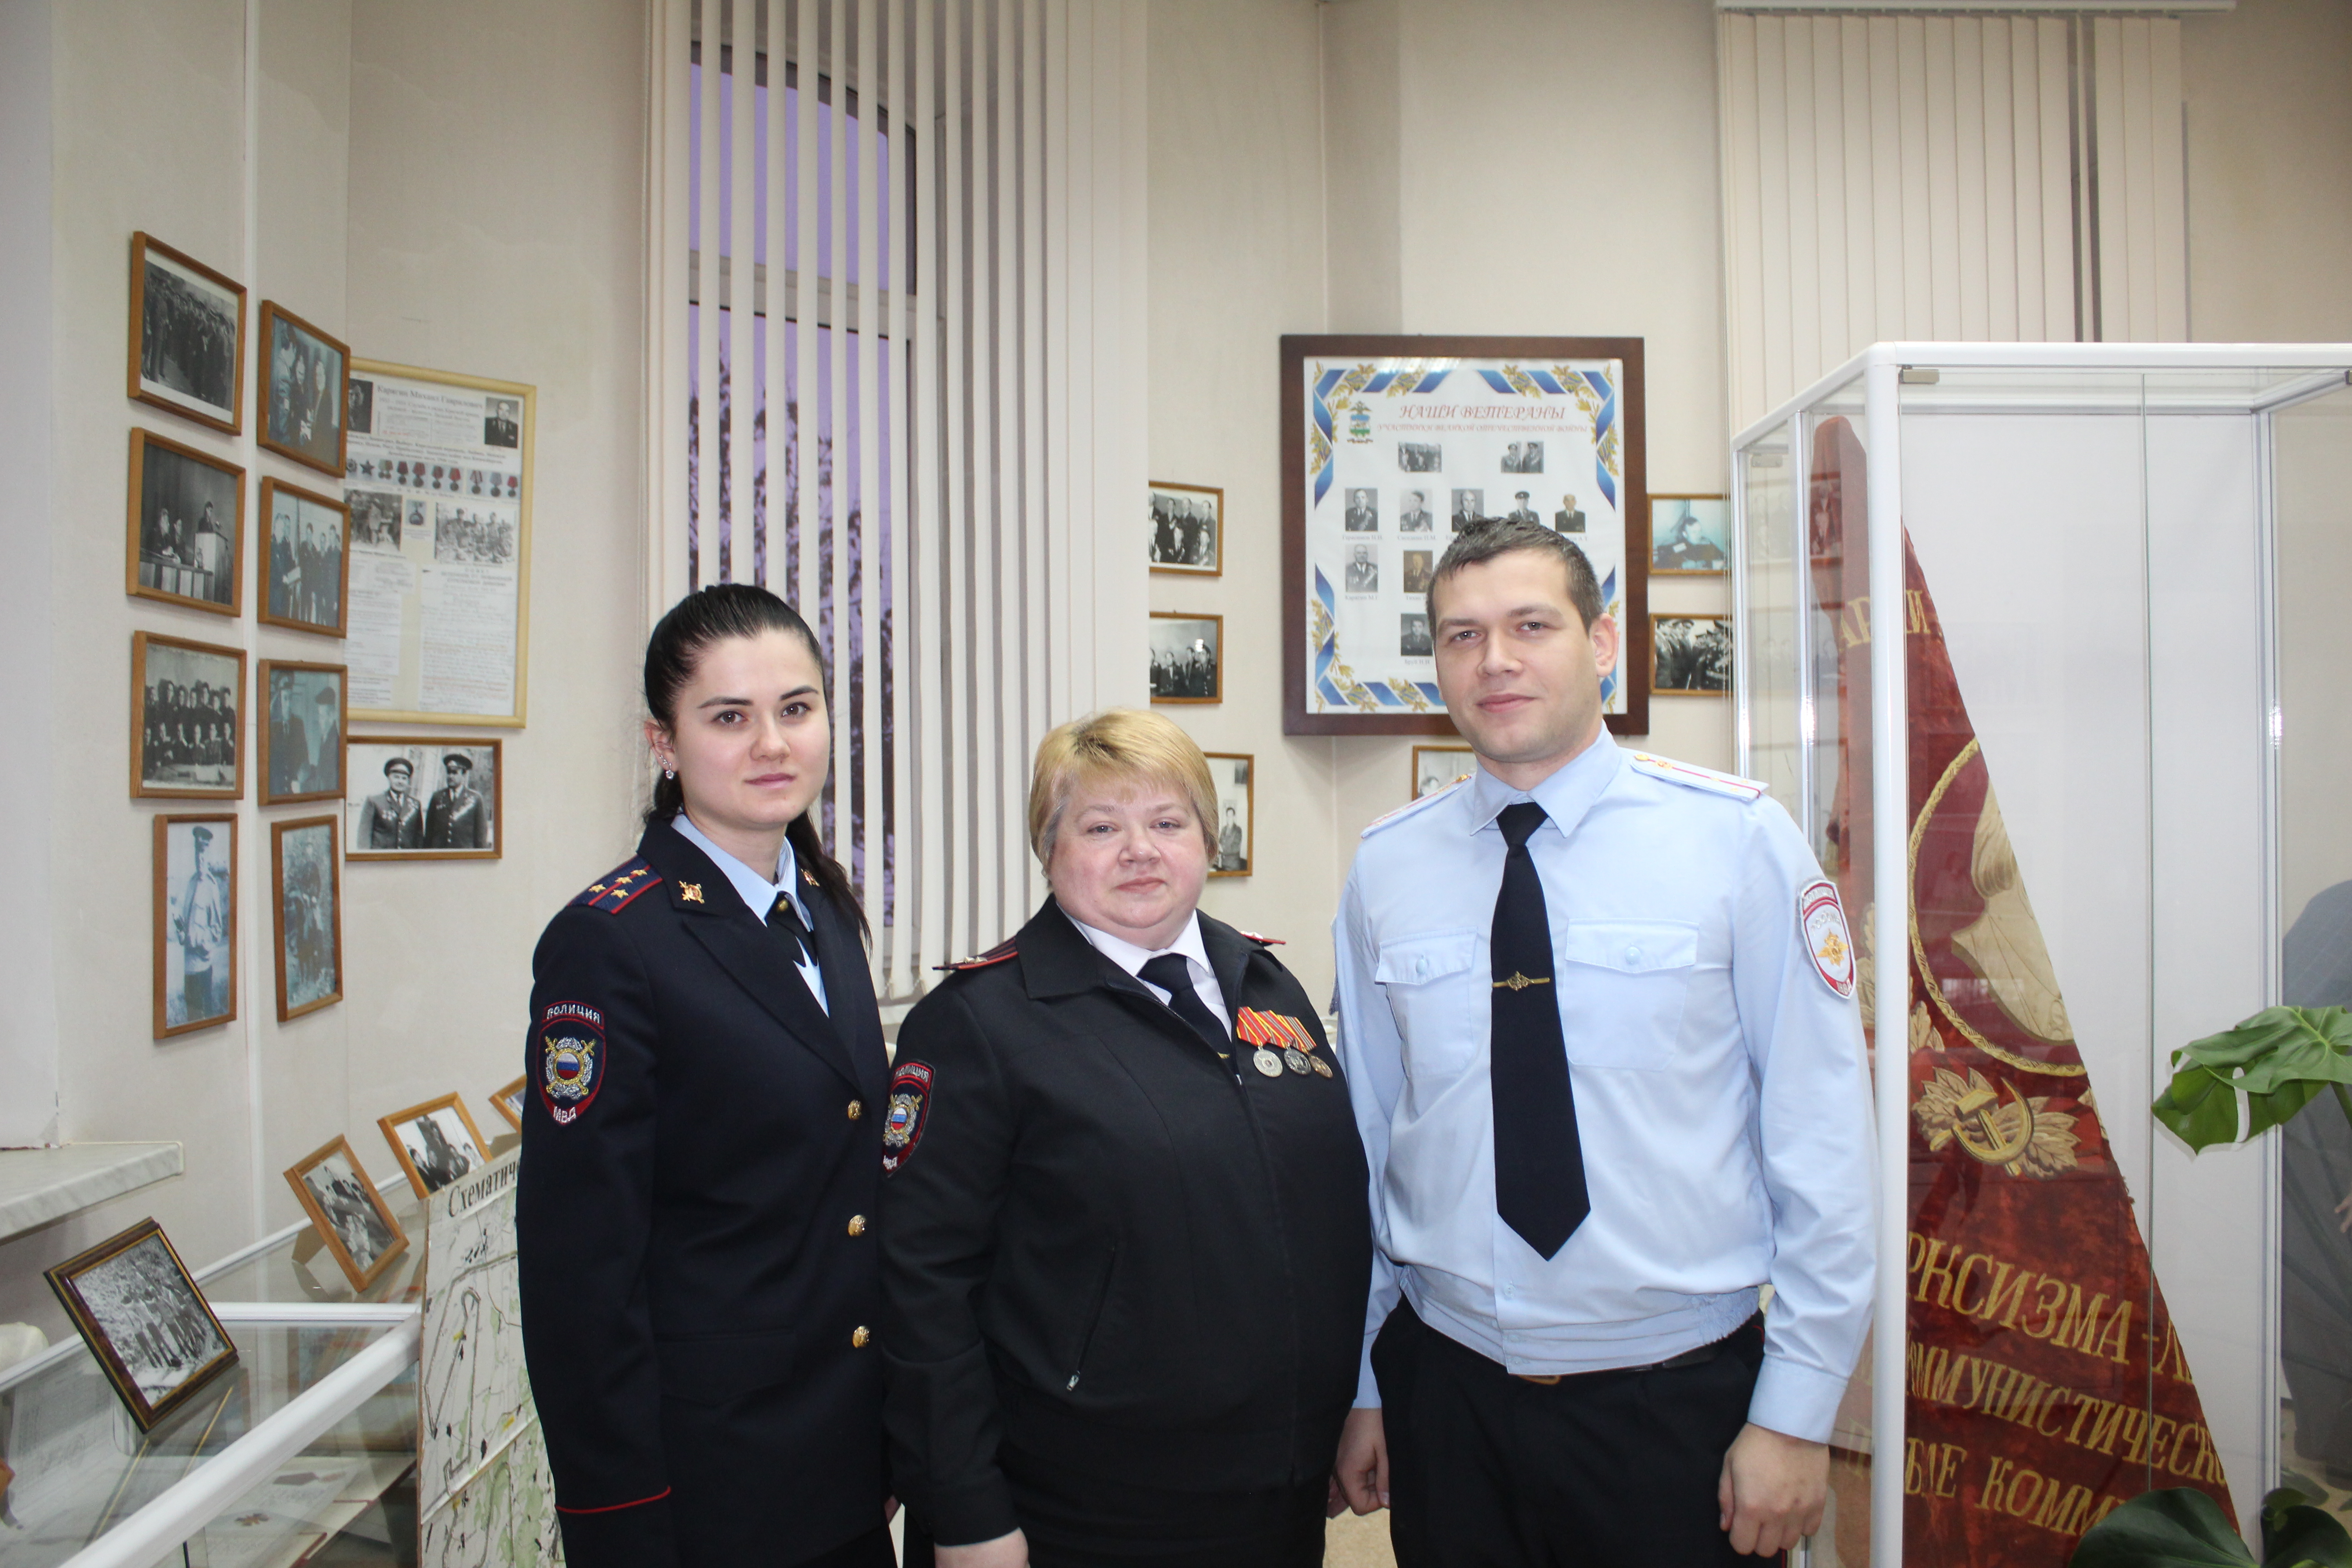 Подполковник полиции Татьяна Карпенко: «Ухожу, но не прощаюсь»!